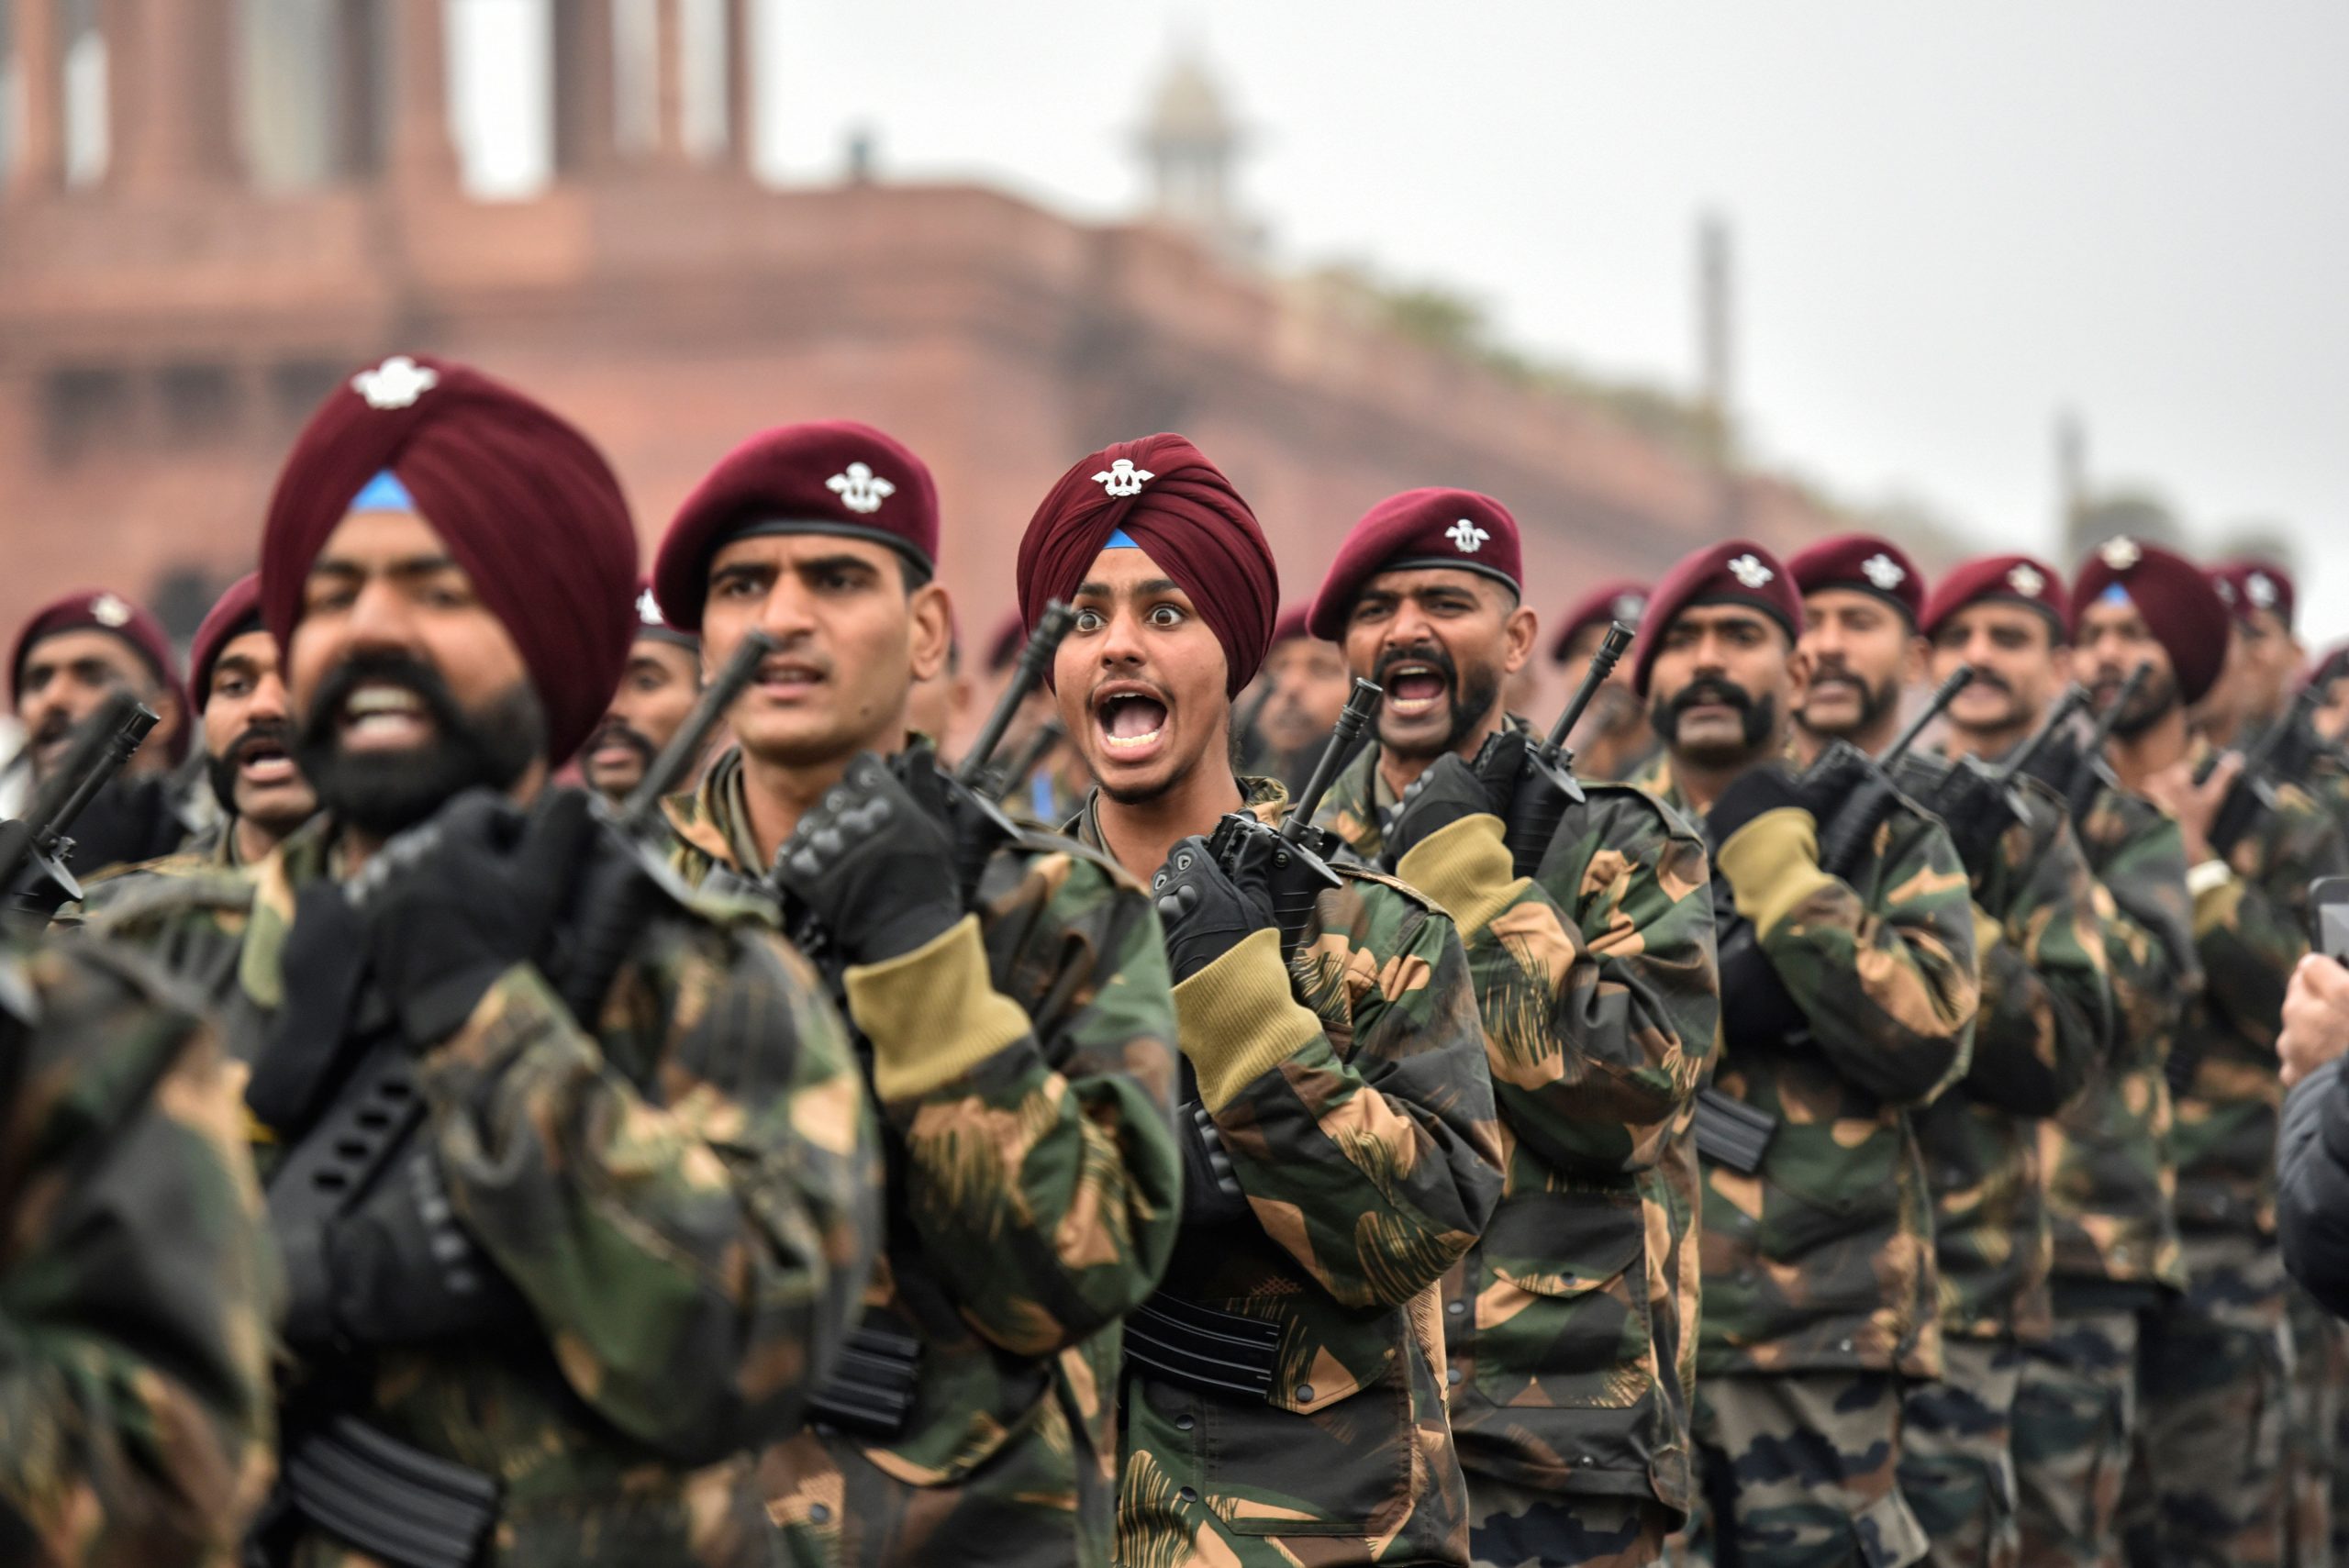 75th Indian Army Day: सेना दिवस 15 जनवरी को ही क्यों मनाया जाता है?